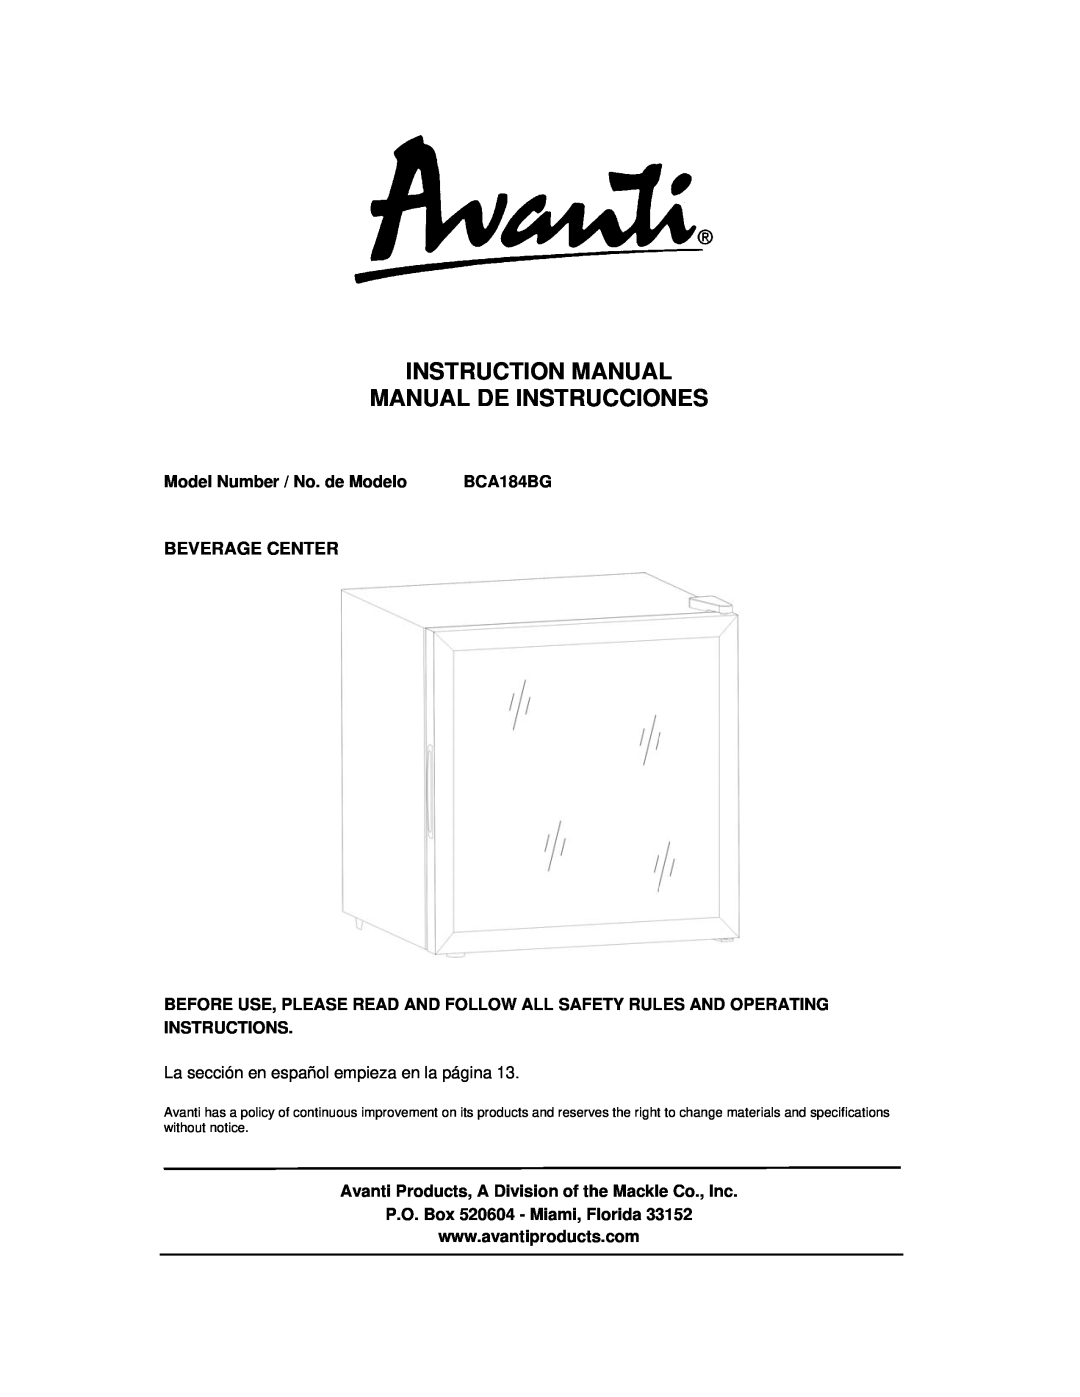 Avanti BCA184BG instruction manual Model Number / No. de Modelo, Beverage Center, P.O. Box 520604 - Miami, Florida 